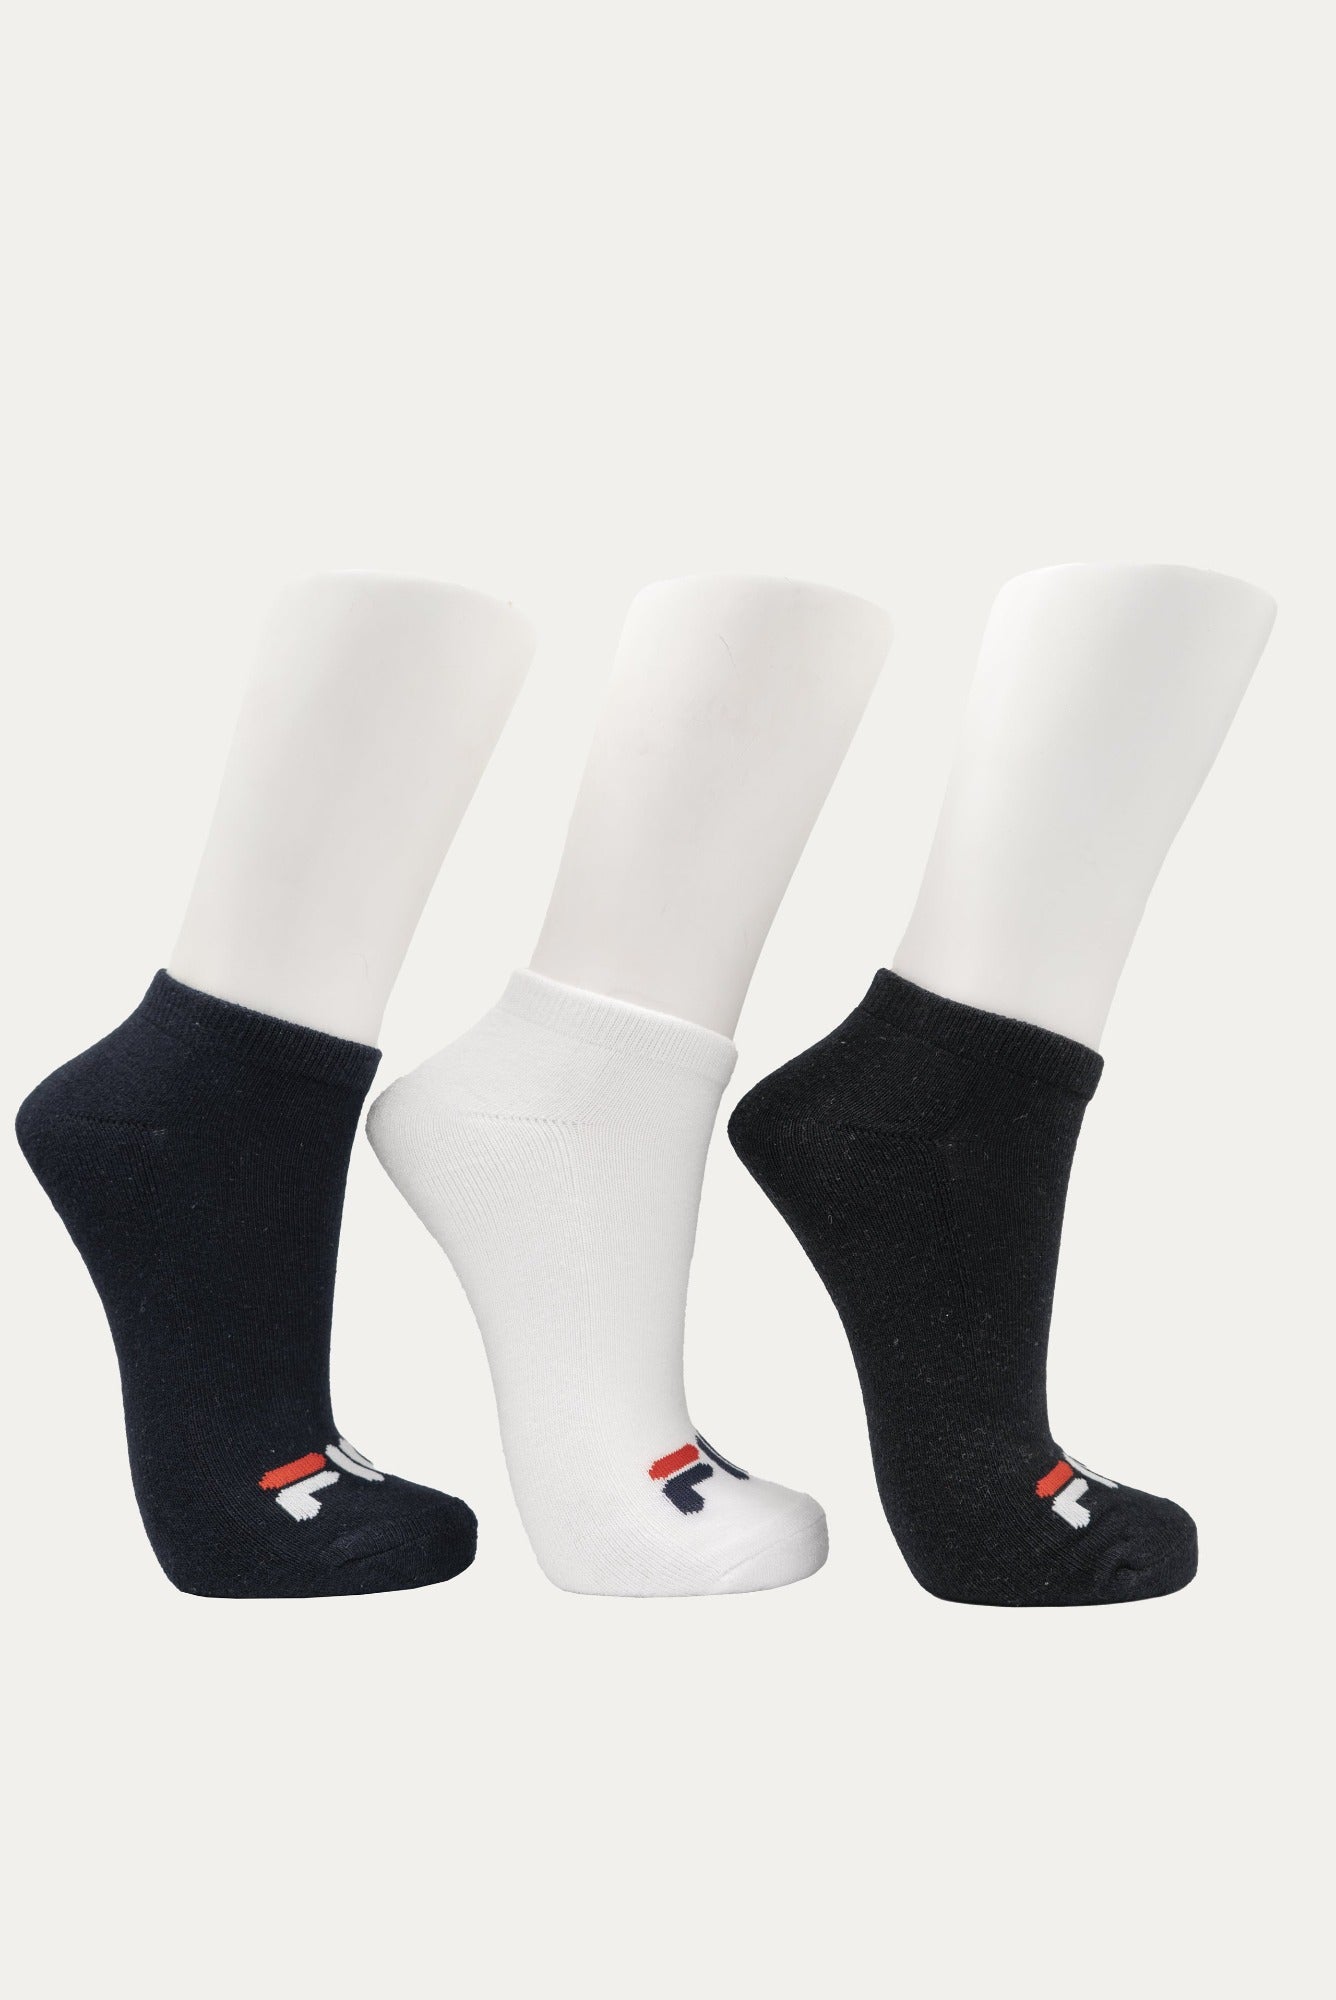 FILA Women's Sicily Ankle Sock 3 Pack (Size 3-8)